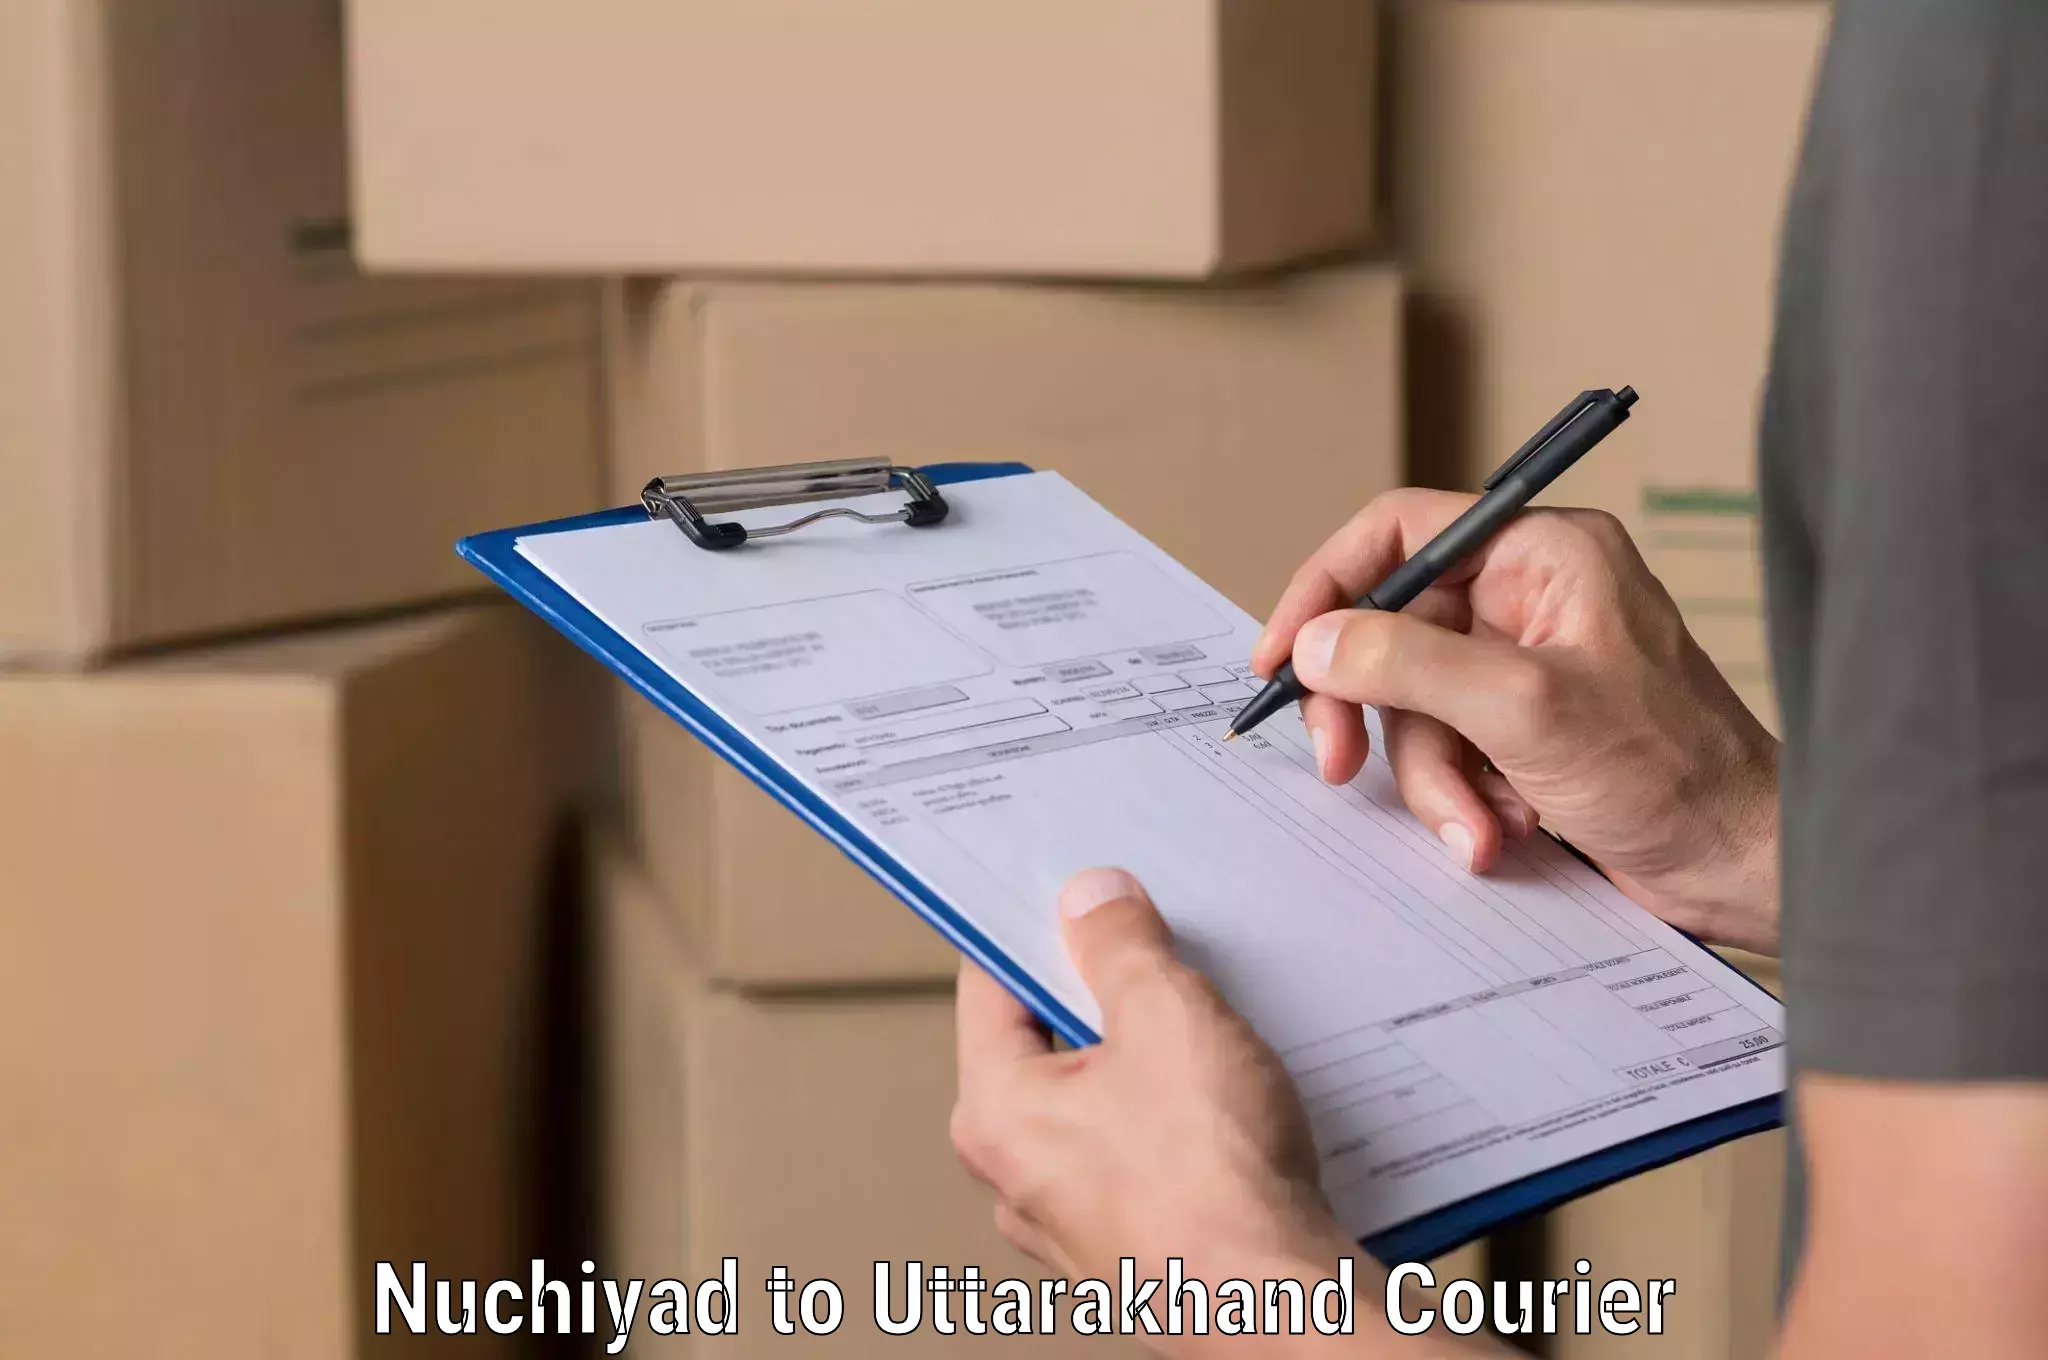 Special handling courier Nuchiyad to Nainital